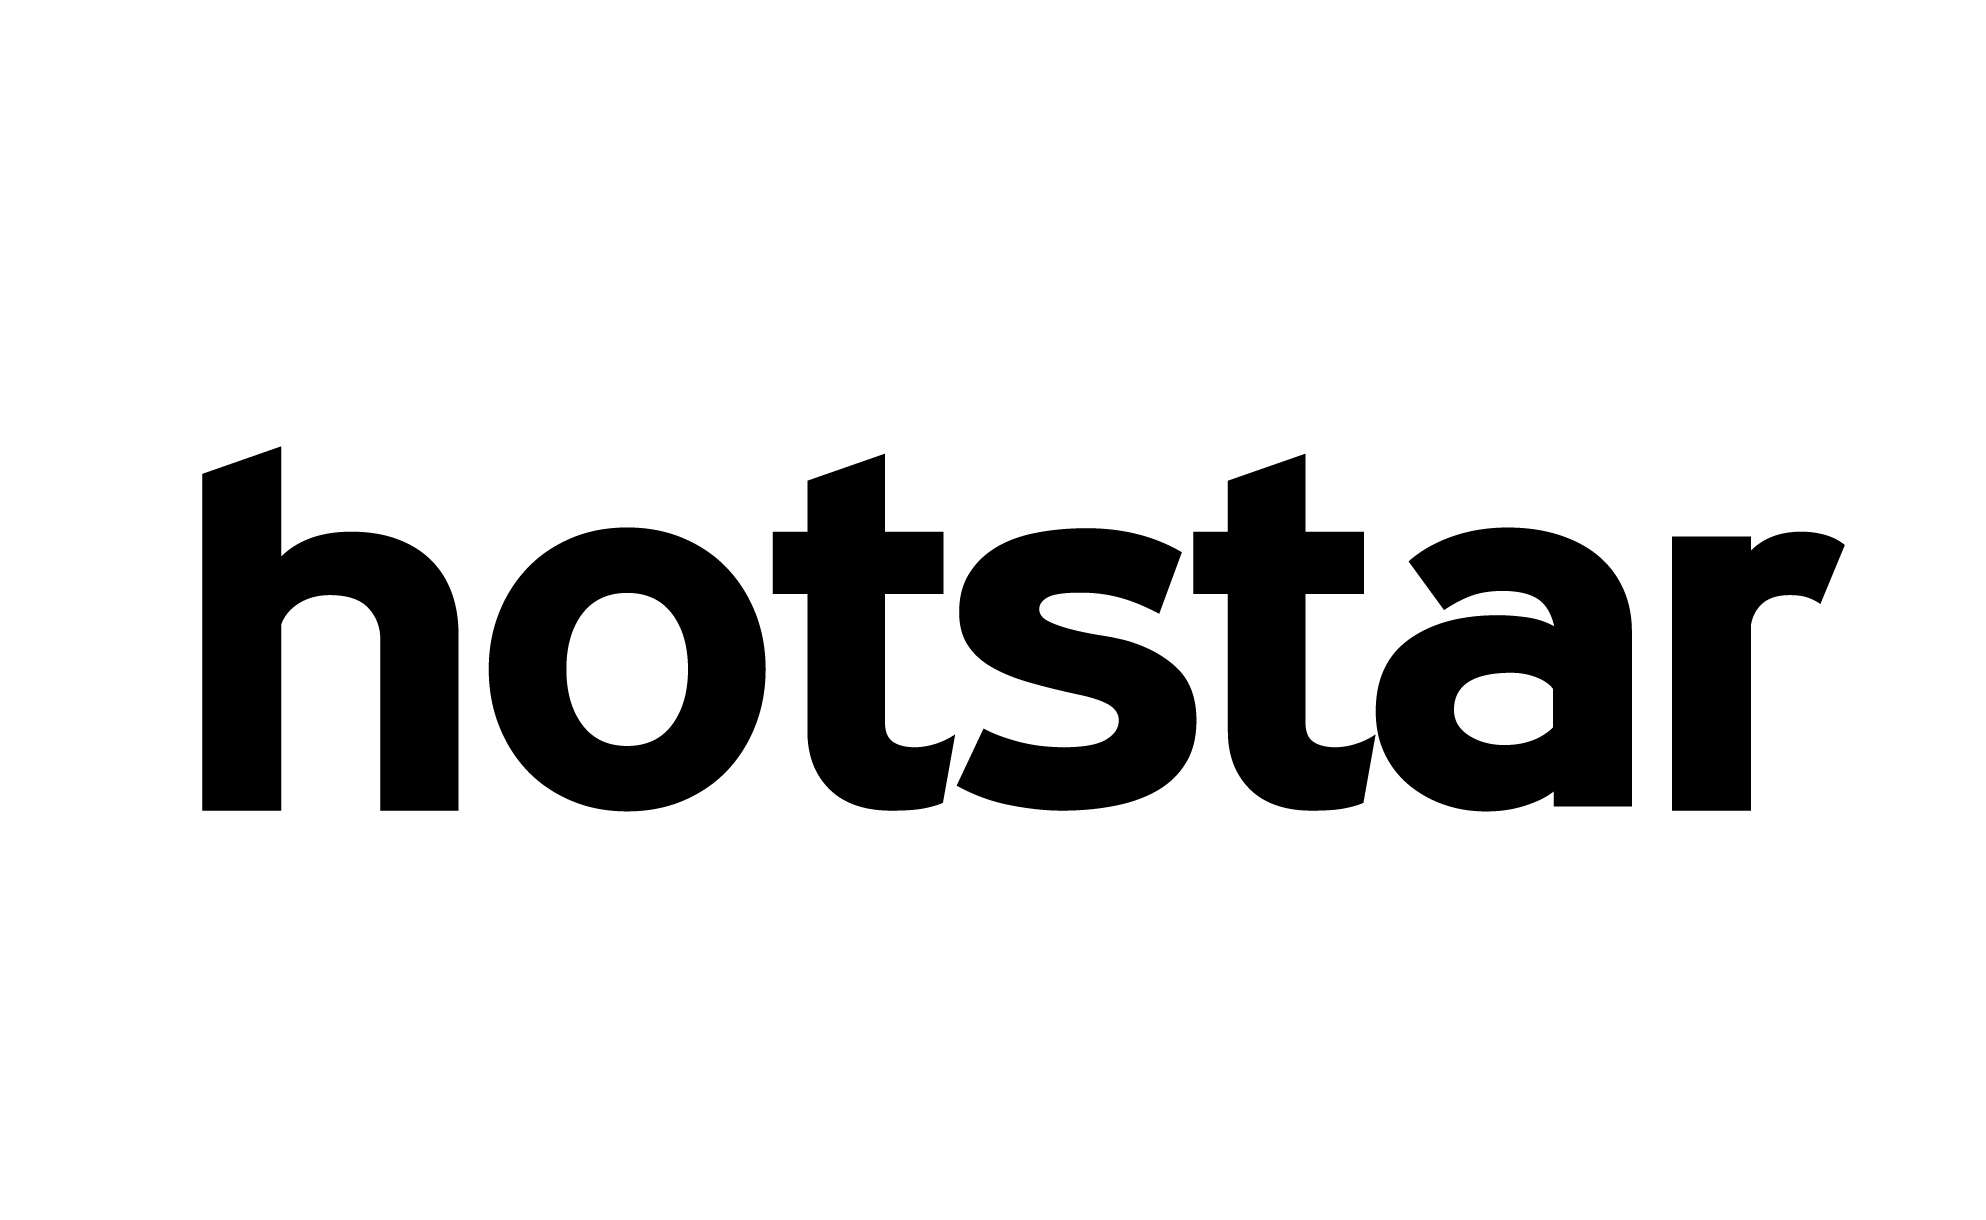 Final Hotstar logo lockup